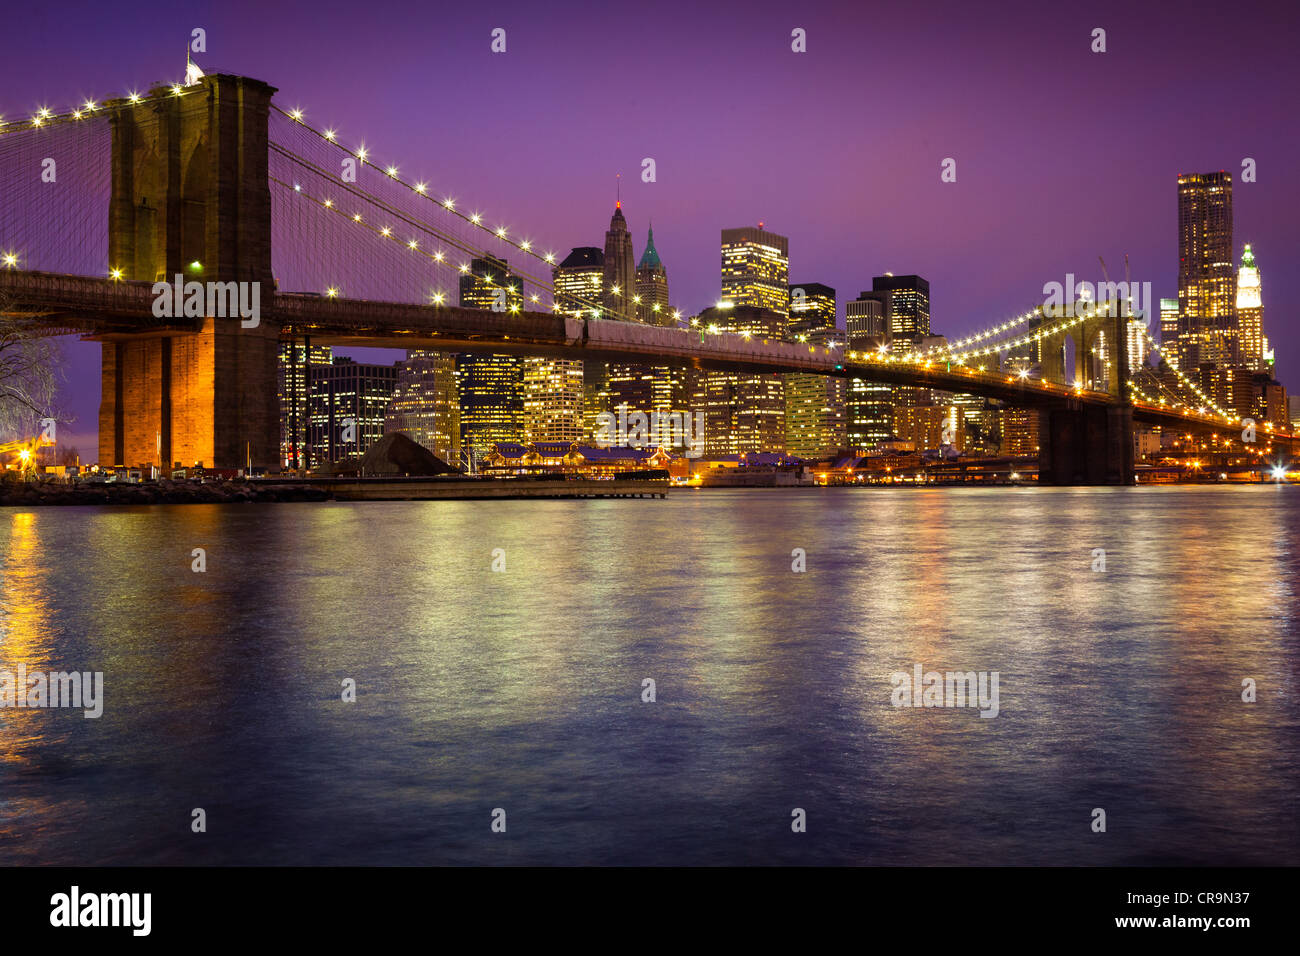 Pont de Brooklyn à New York, qui traverse l'East River, entre Manhattan et Brooklyn, est vu ici dans la nuit Banque D'Images